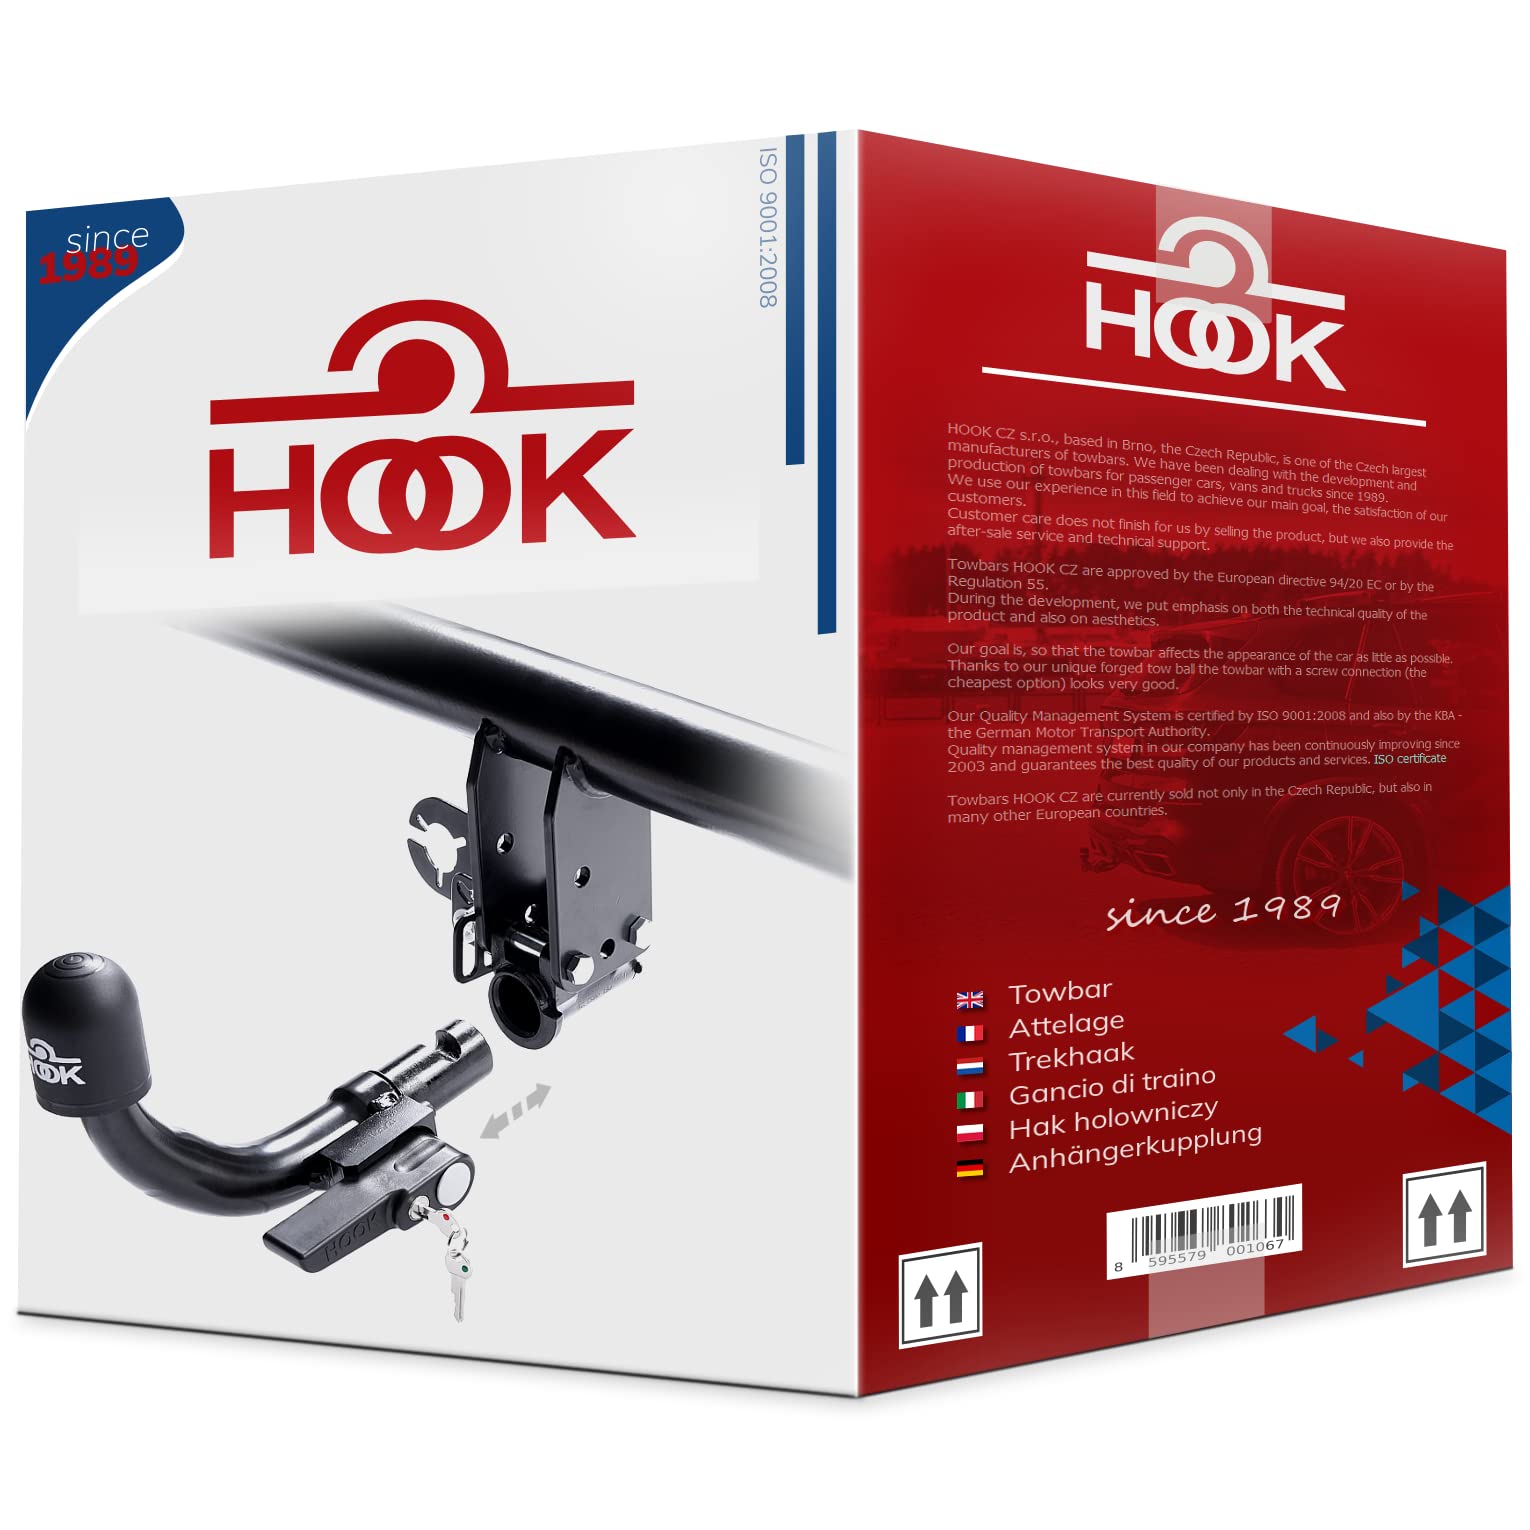 Hook horizontal abnehmbare AHK Anhängerkupplung für Volkswagen Tiguan I 5N 11.2007-2016 + universell Elektrosatz 13-polig von Hook